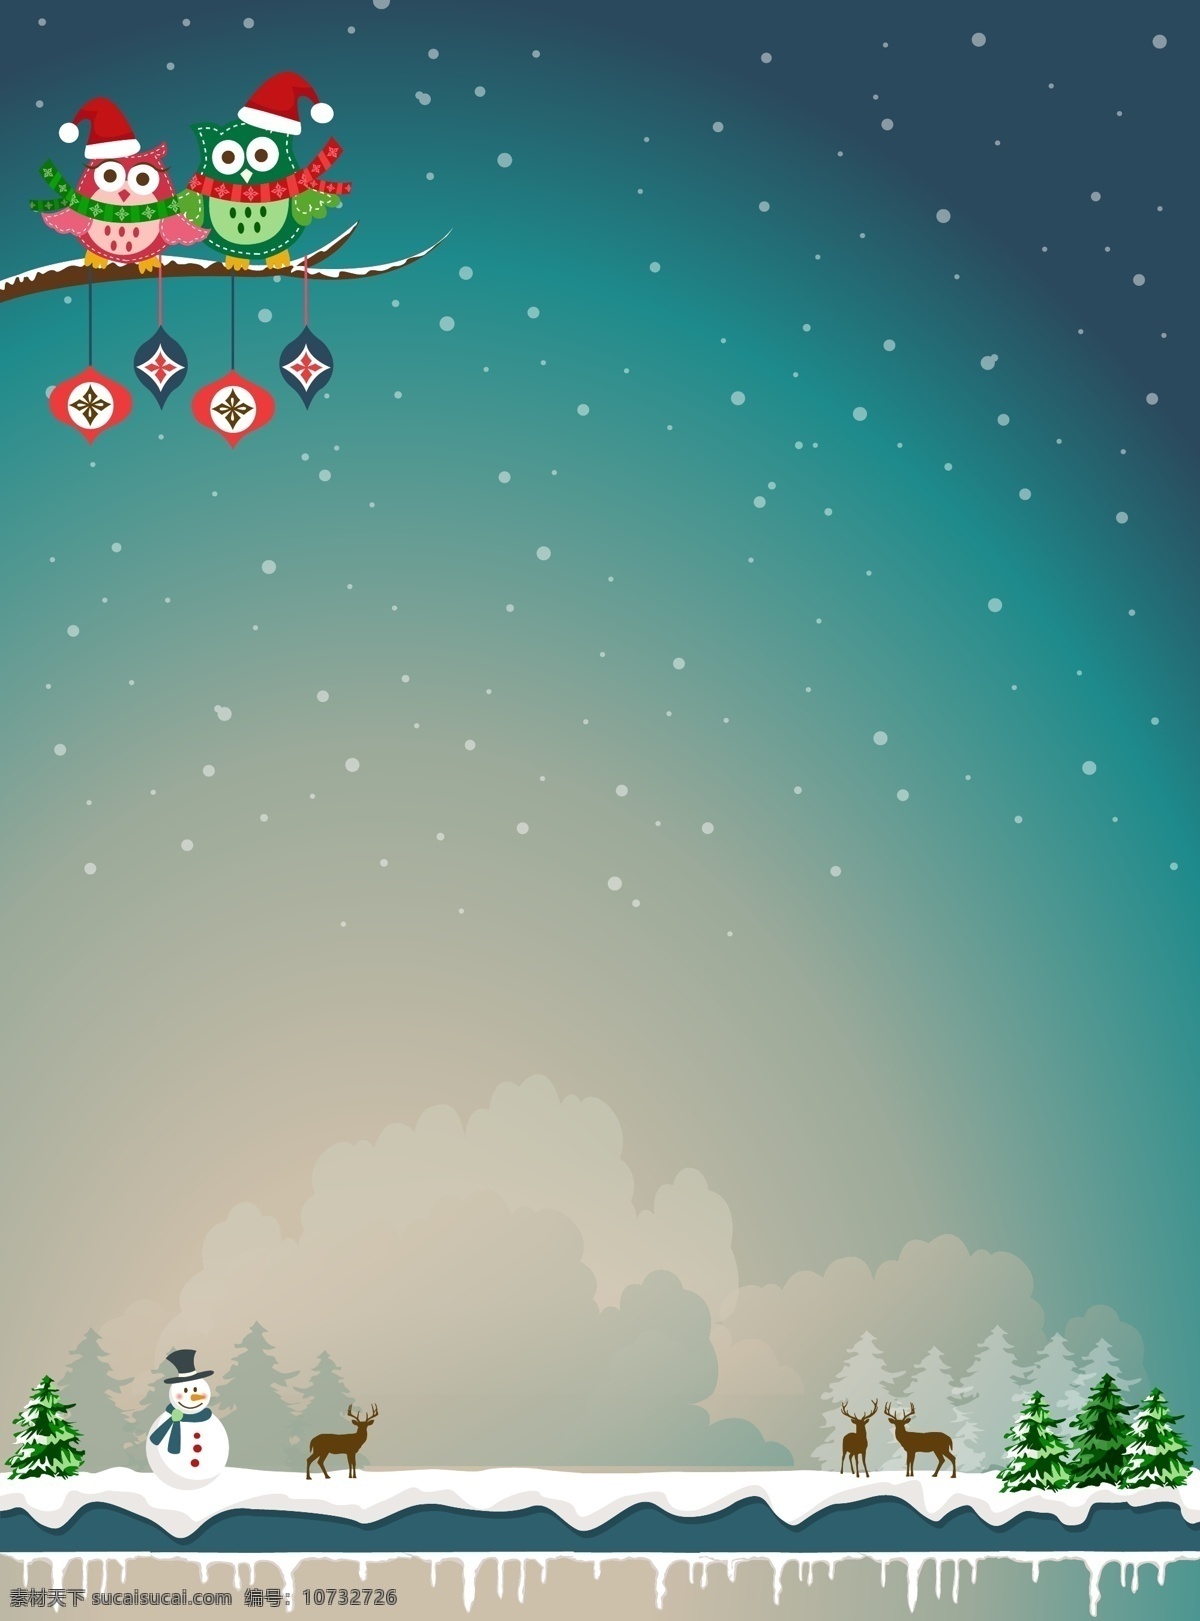 矢量 卡通 手绘 圣诞节 雪景 背景 蓝色 夜晚 雪人 驯鹿 猫头鹰 海报